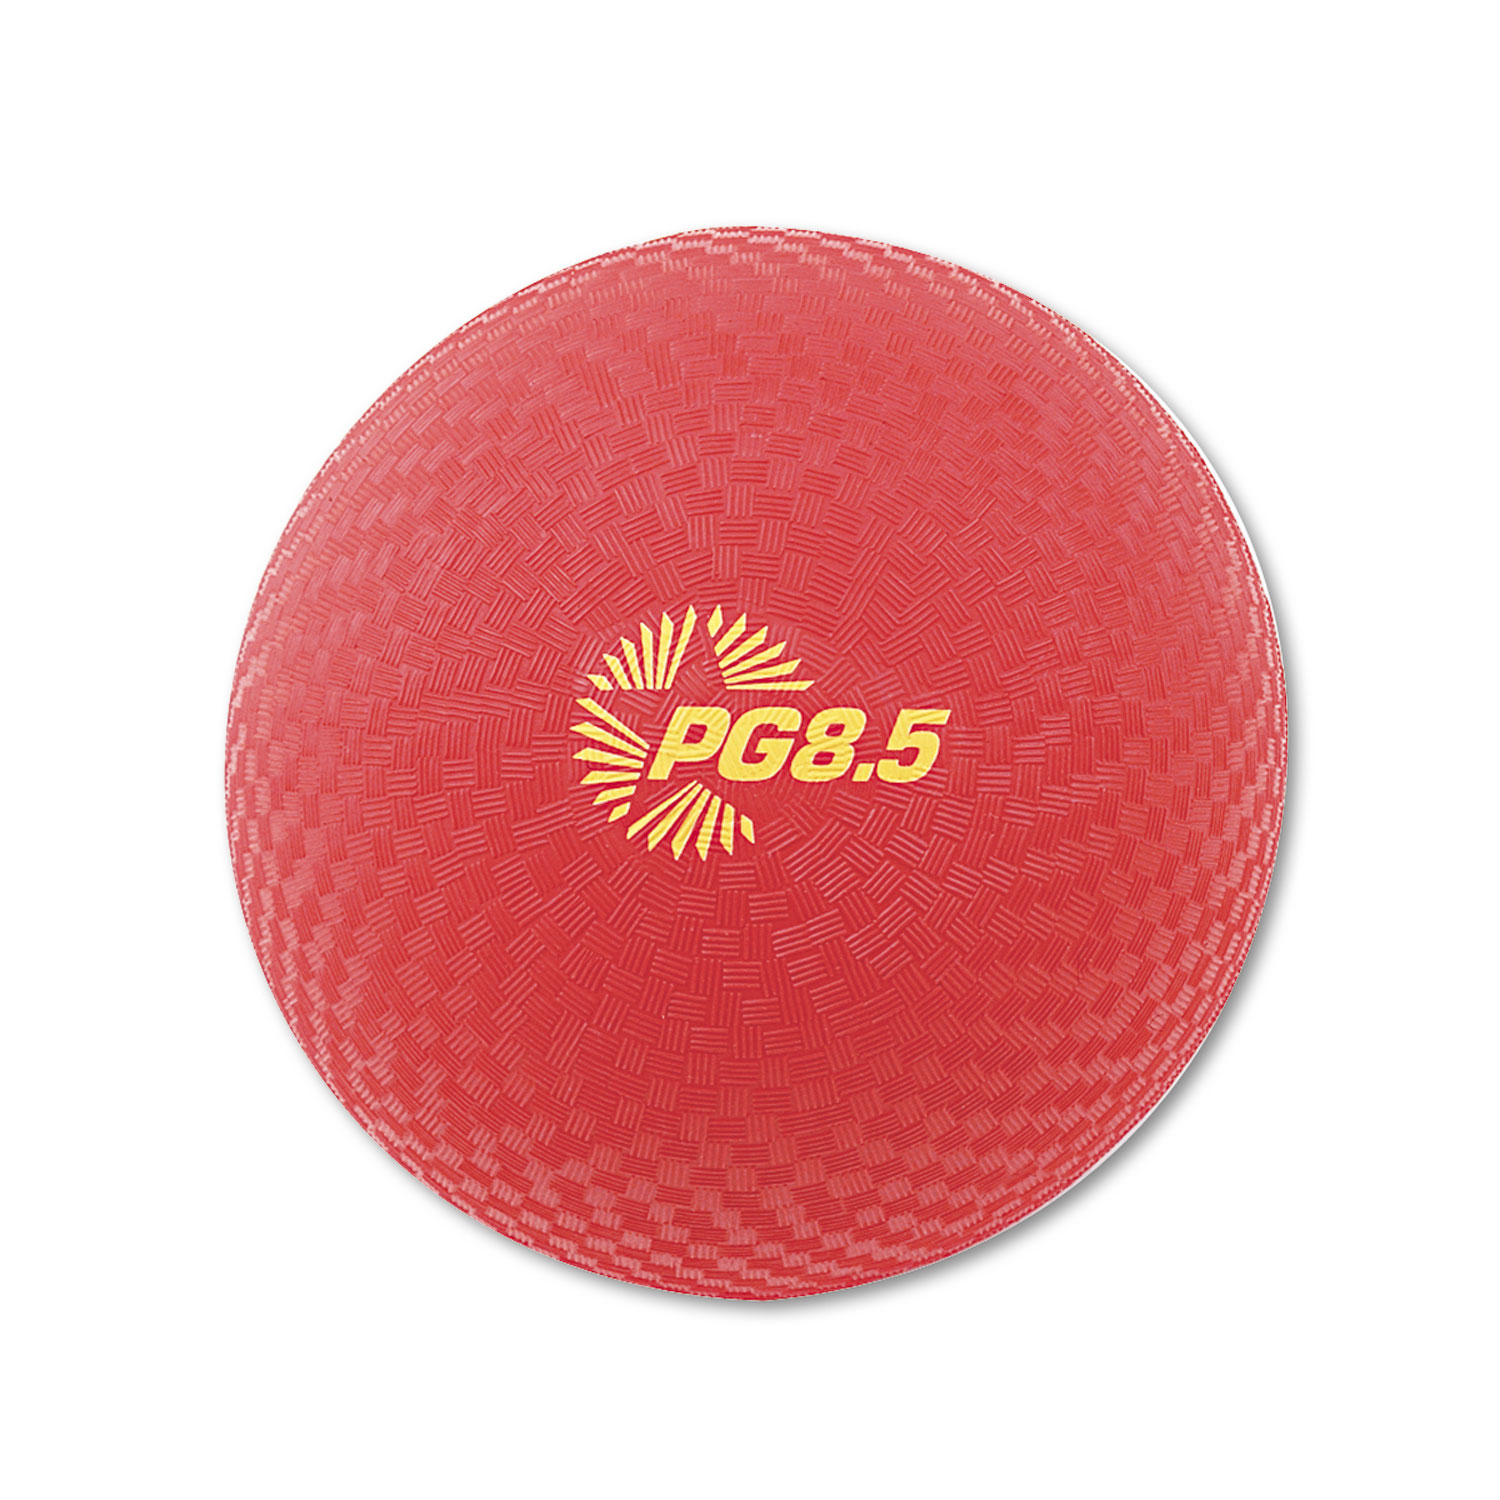 Playground Ball, 8-1/2 Diameter, Red